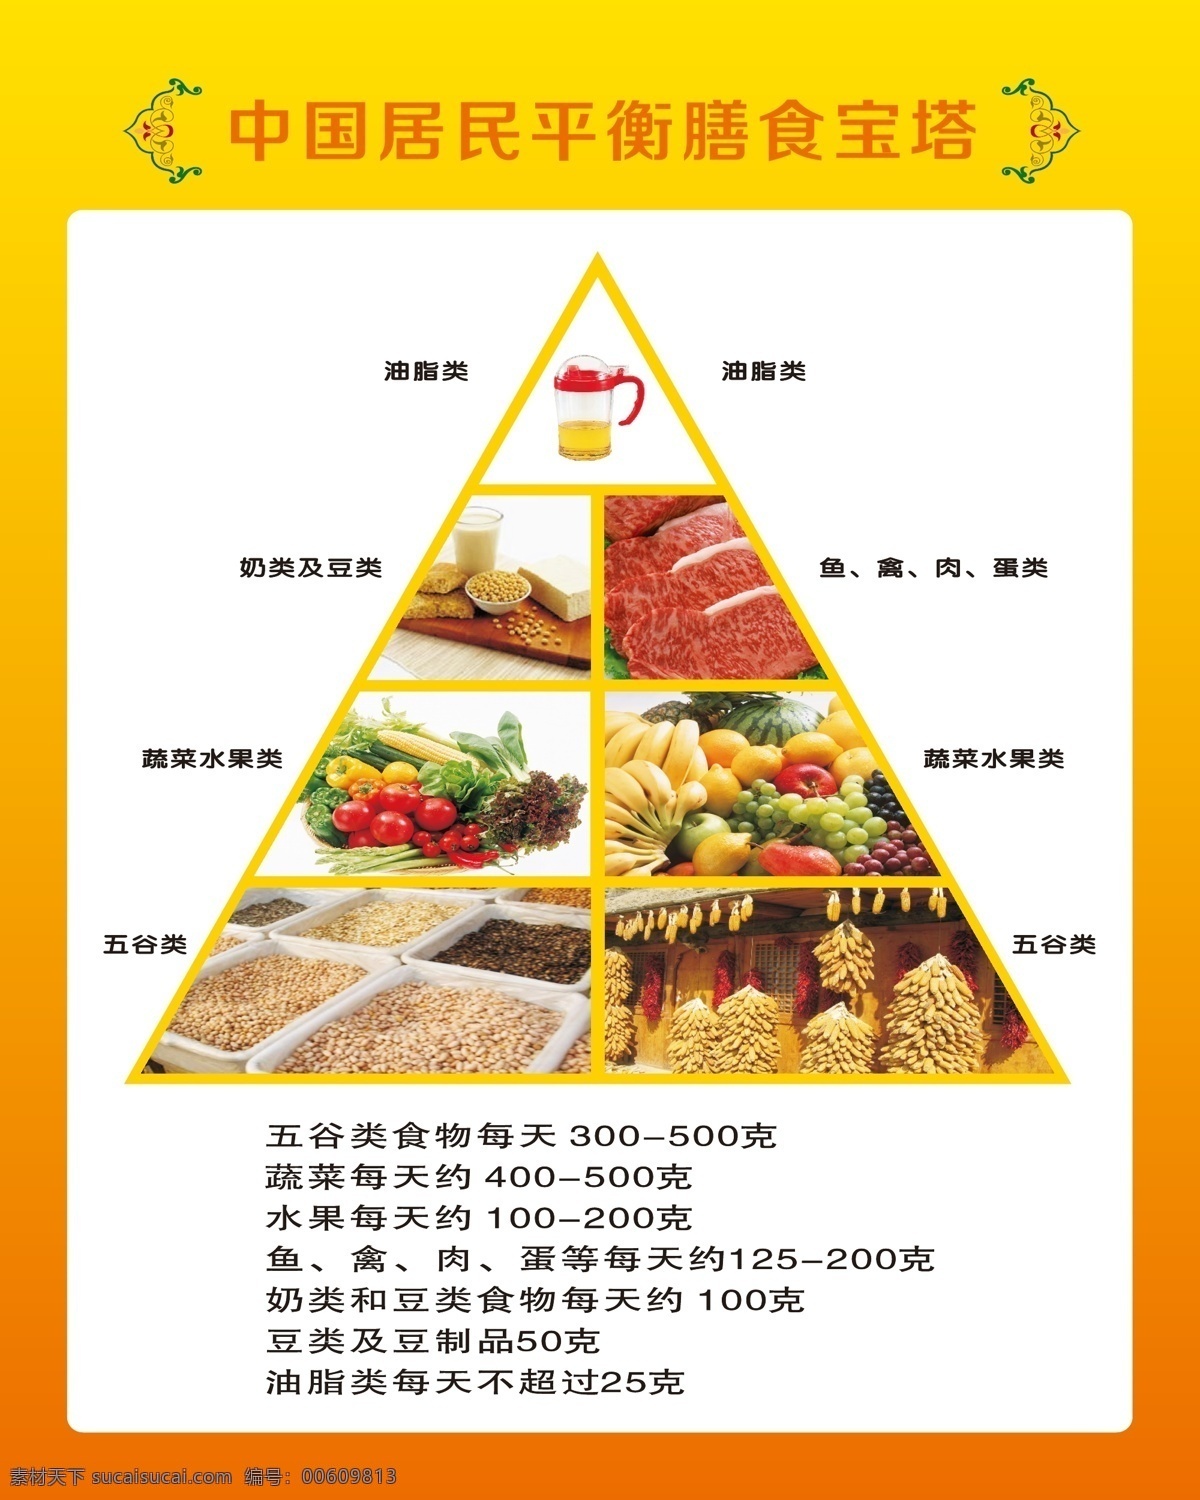 膳食宝塔 中国居民宝塔 膳食搭配 平衡膳食 宝塔设计